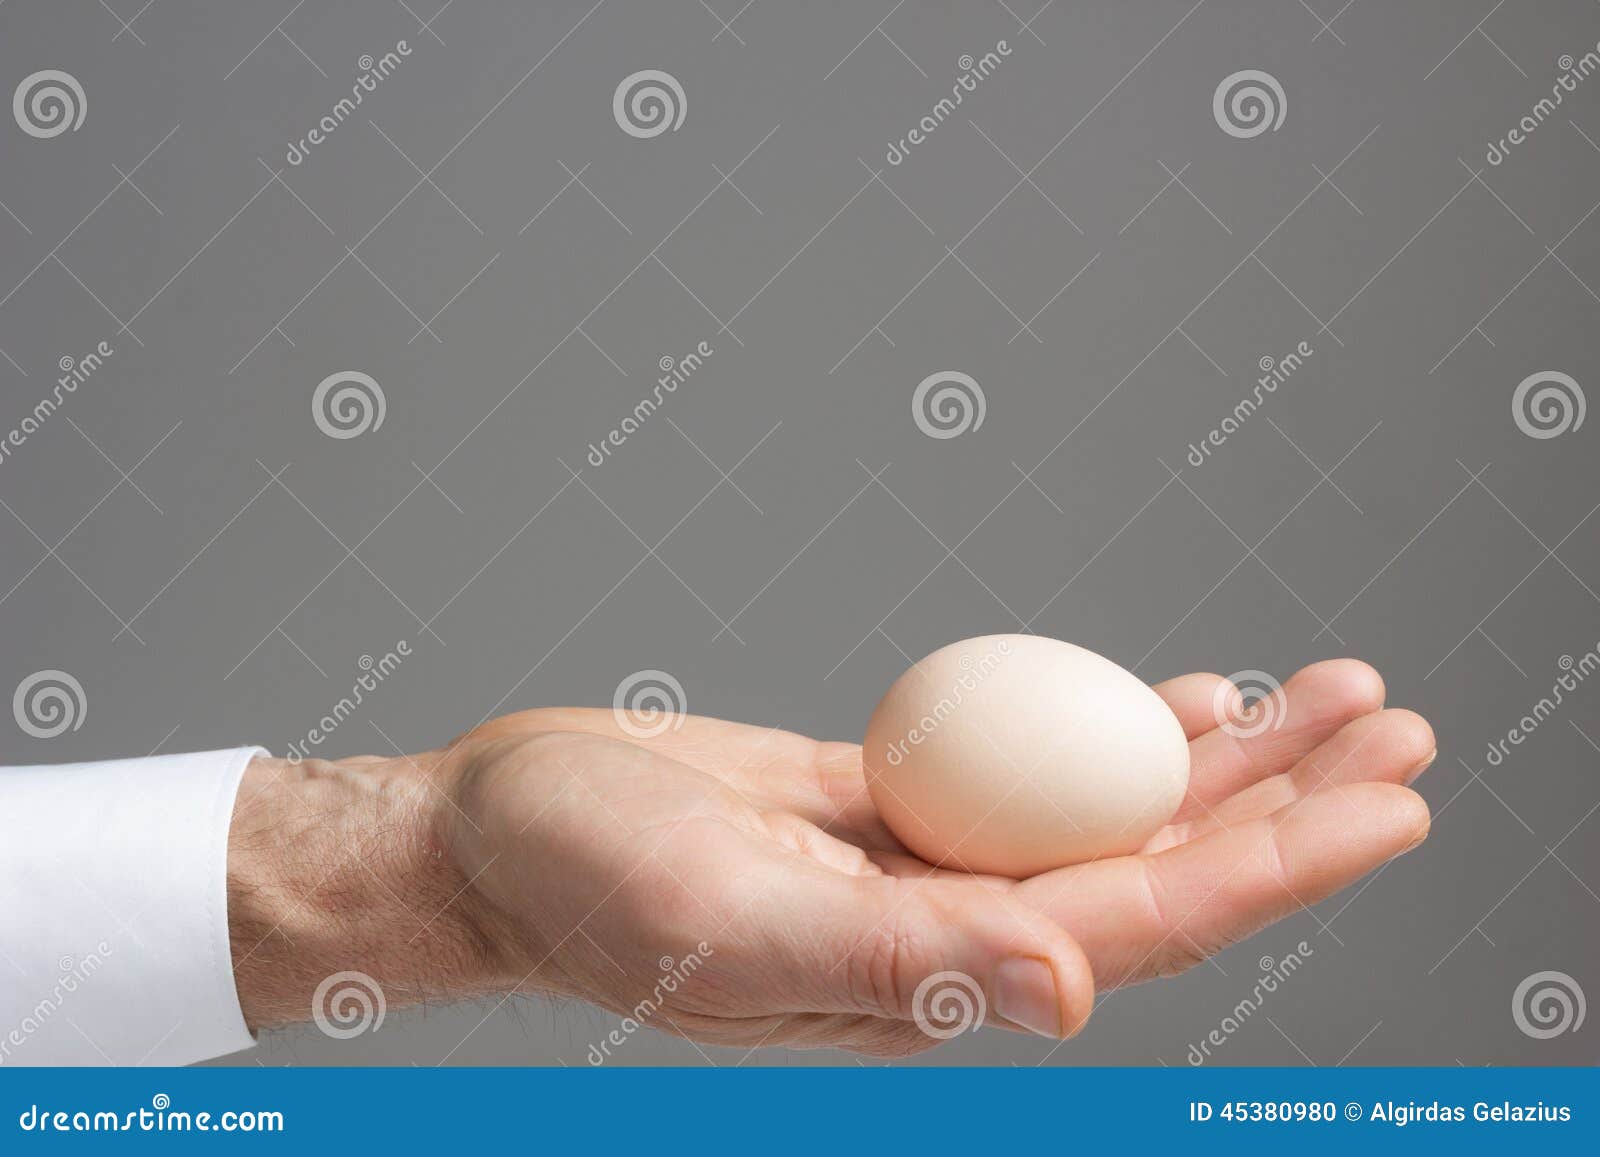 Два яйца. Два яйца в руке. Держи яйцо. Мальчики большие яички